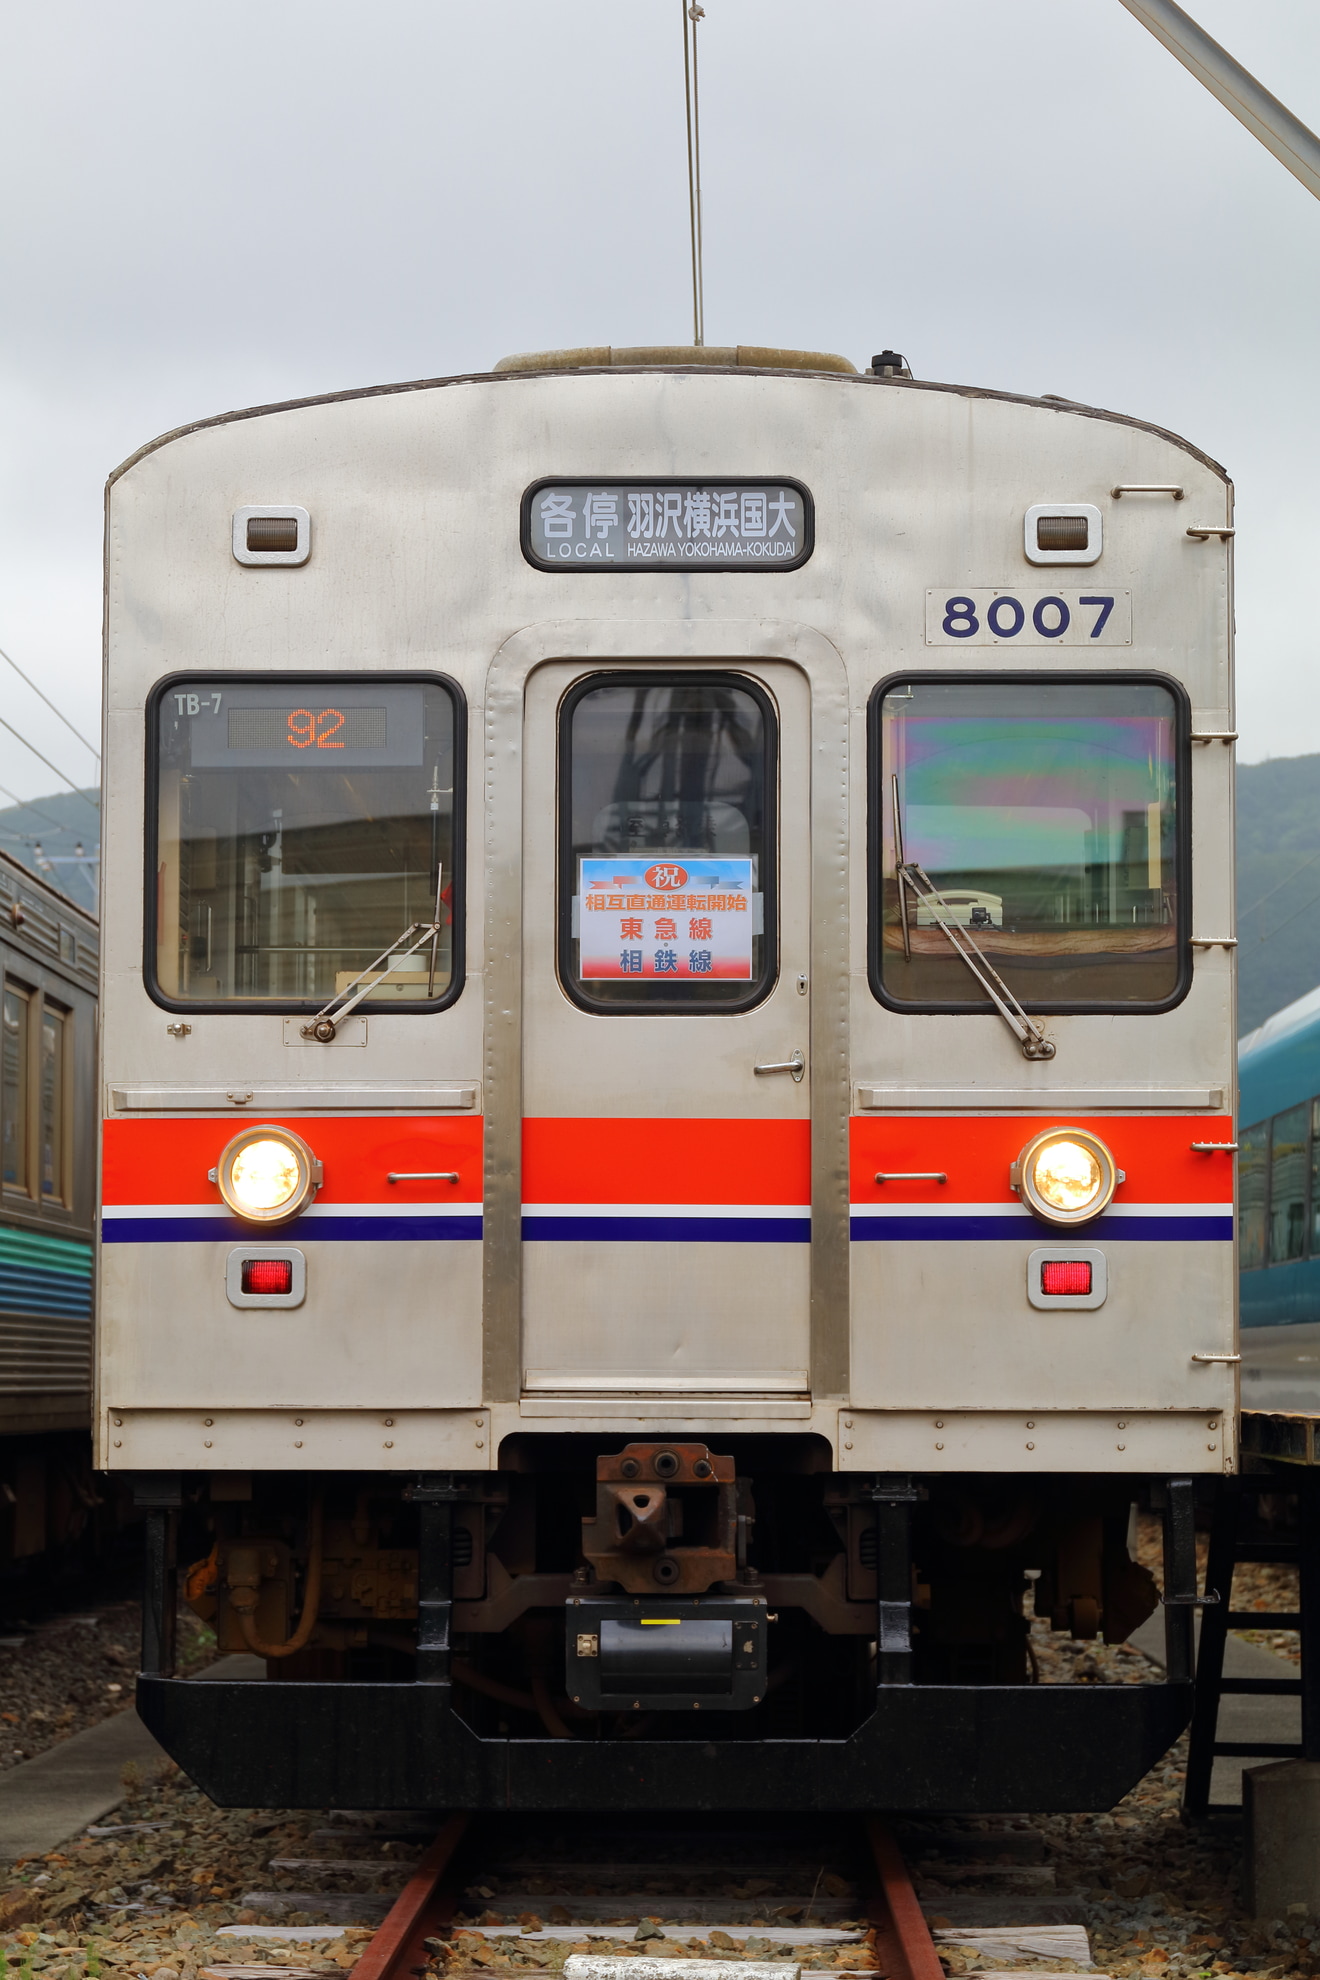 【伊豆急】3000系風のラッピング姿で8000系TB-7編成団体臨時列車の拡大写真